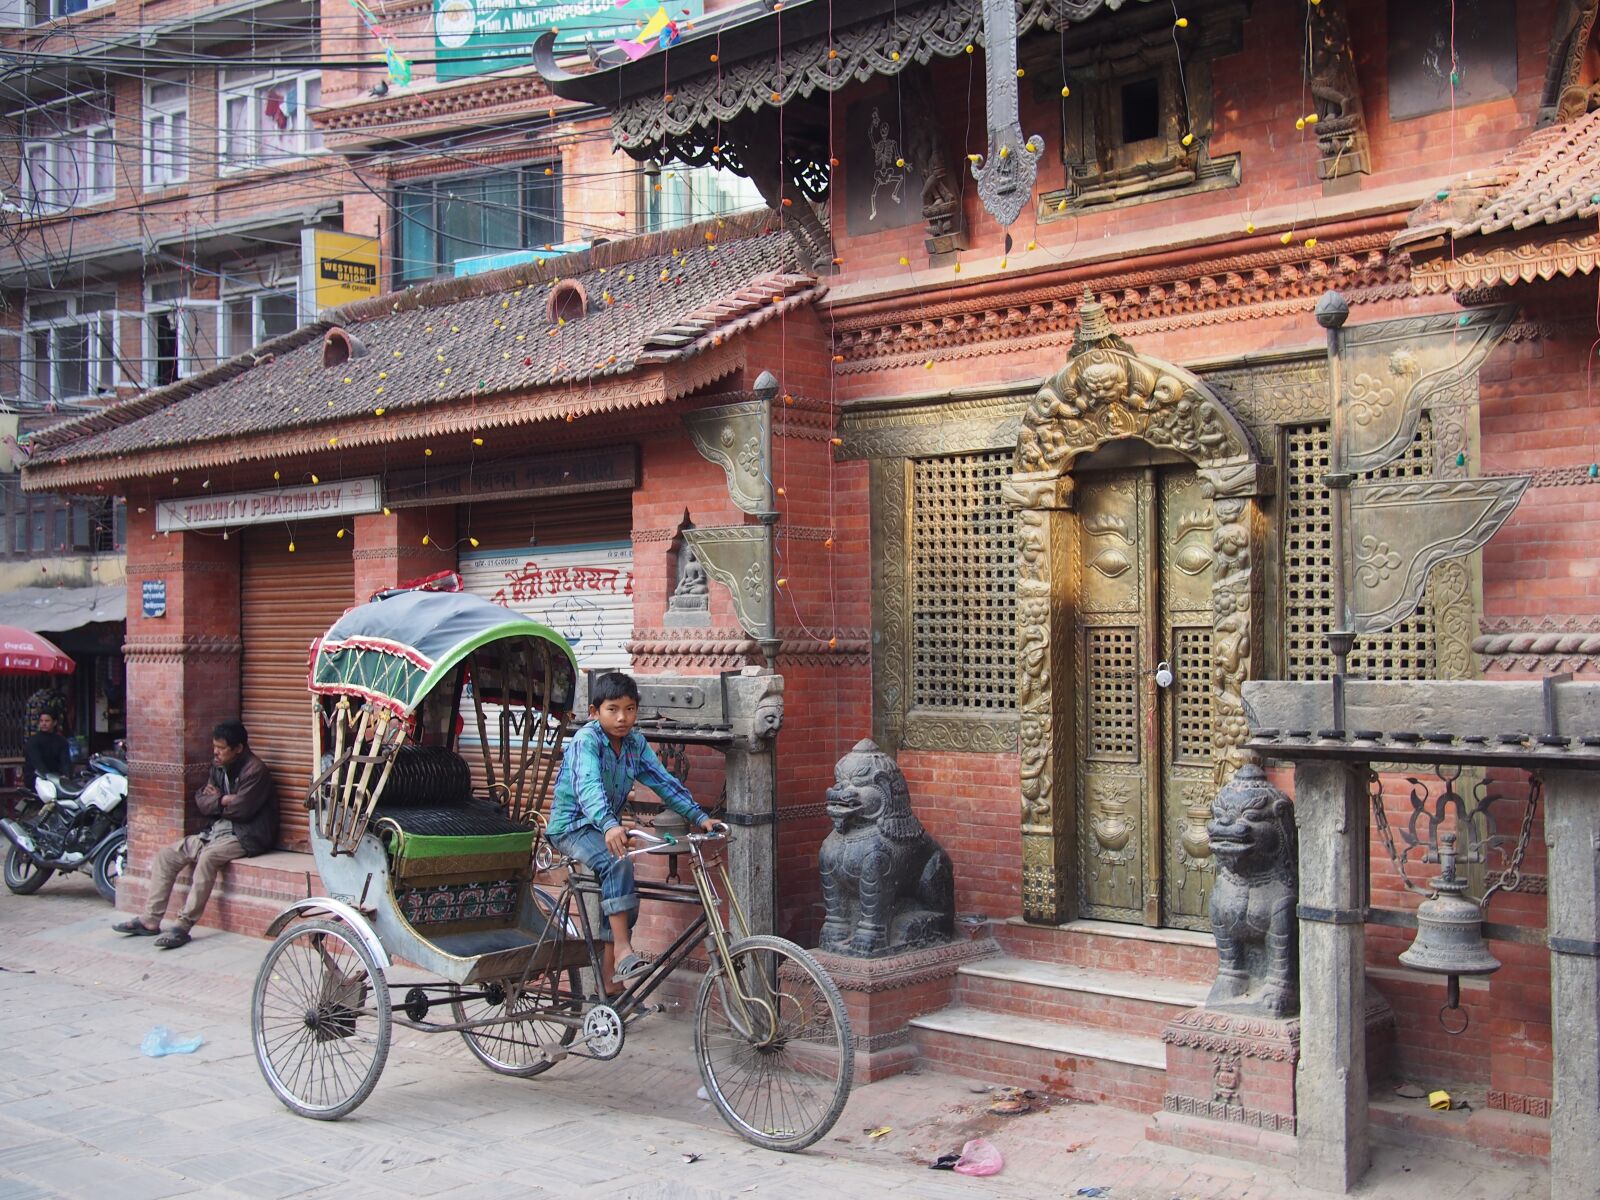 Panasonic Lumix G 20mm F1.7 ASPH sample photo. Rickshaw, kathmandu, nepal photography